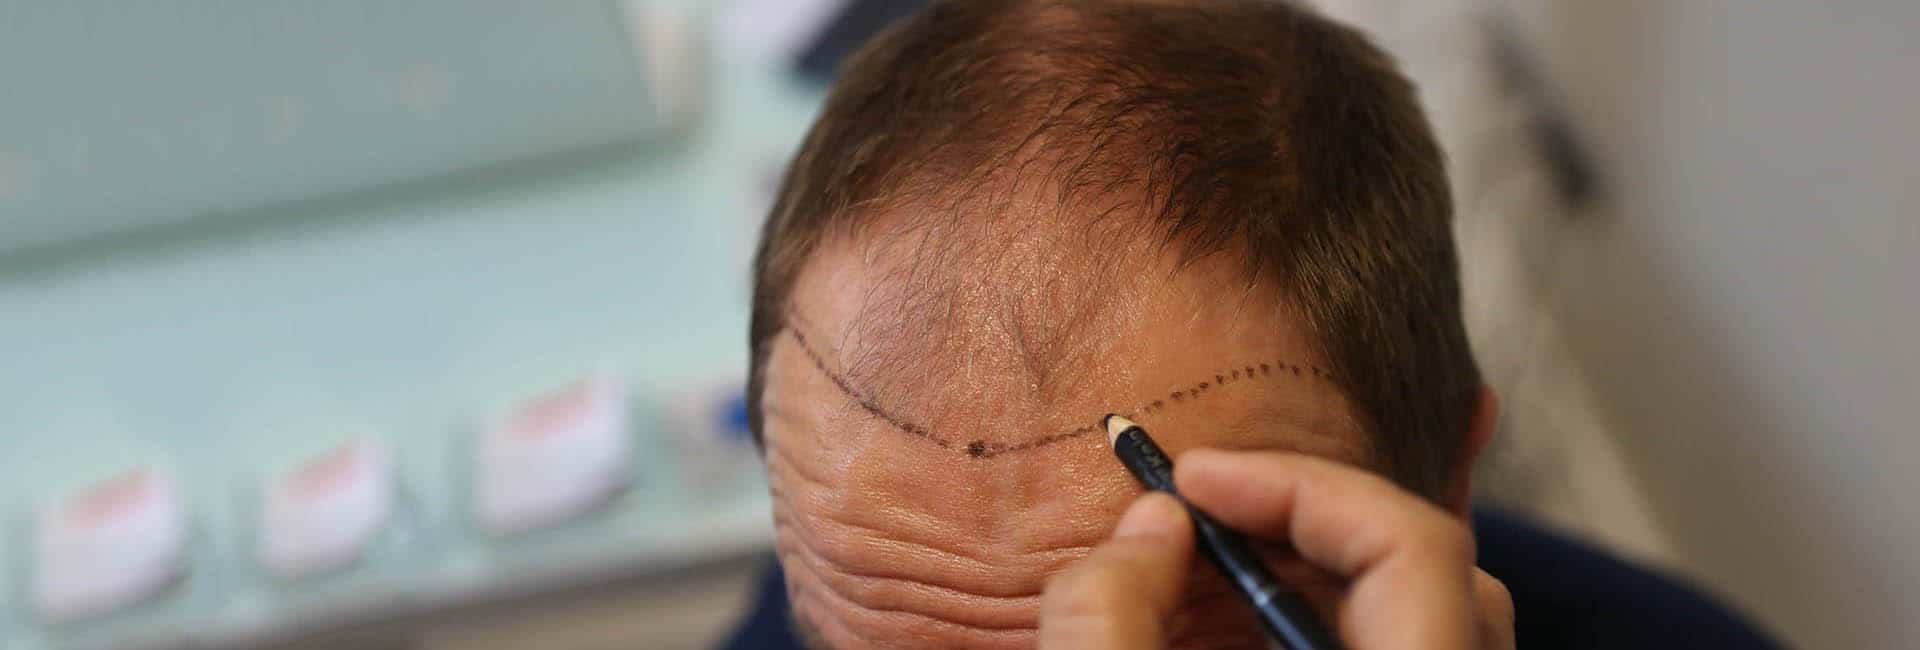 زراعة الشعر الطويل : لزراعة غير مكتشفة ونتائج سريعة - تركي ويز